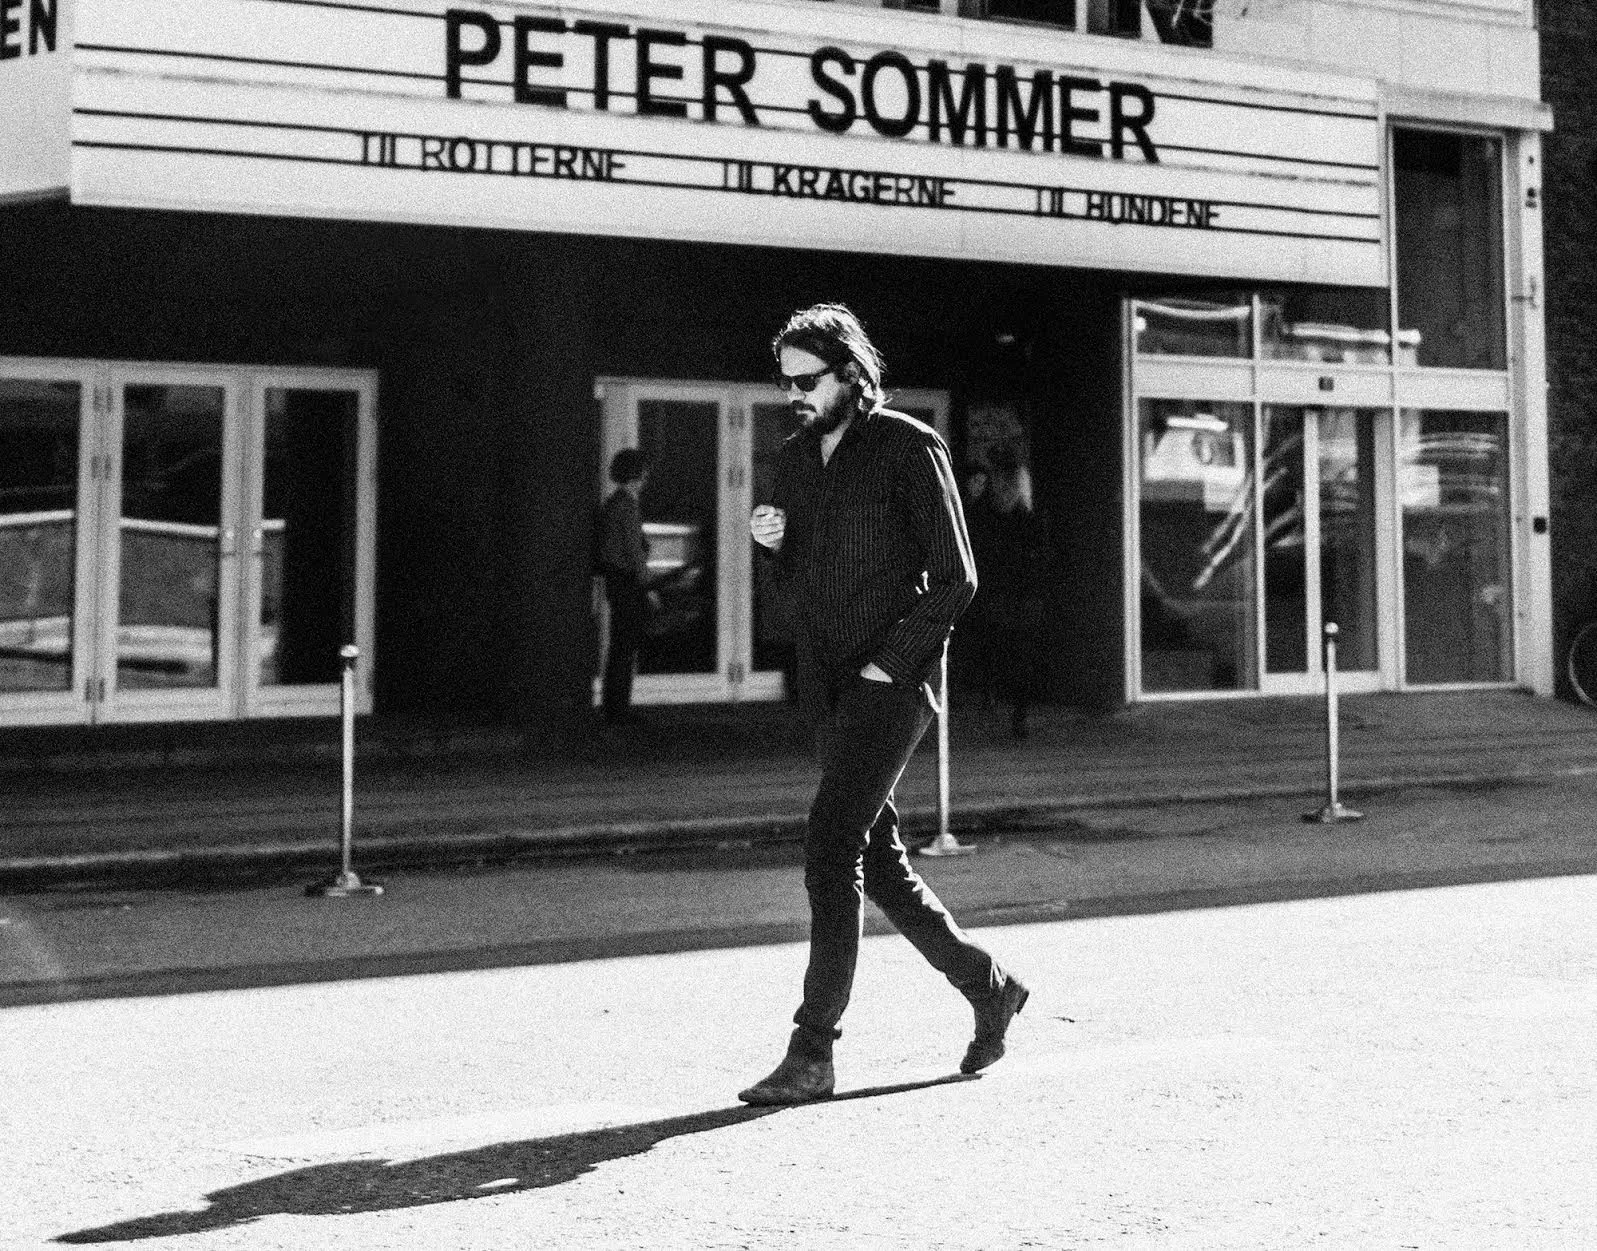 Peter Sommer giver albumkoncerter: – "Til rotterne" er mit reneste brew